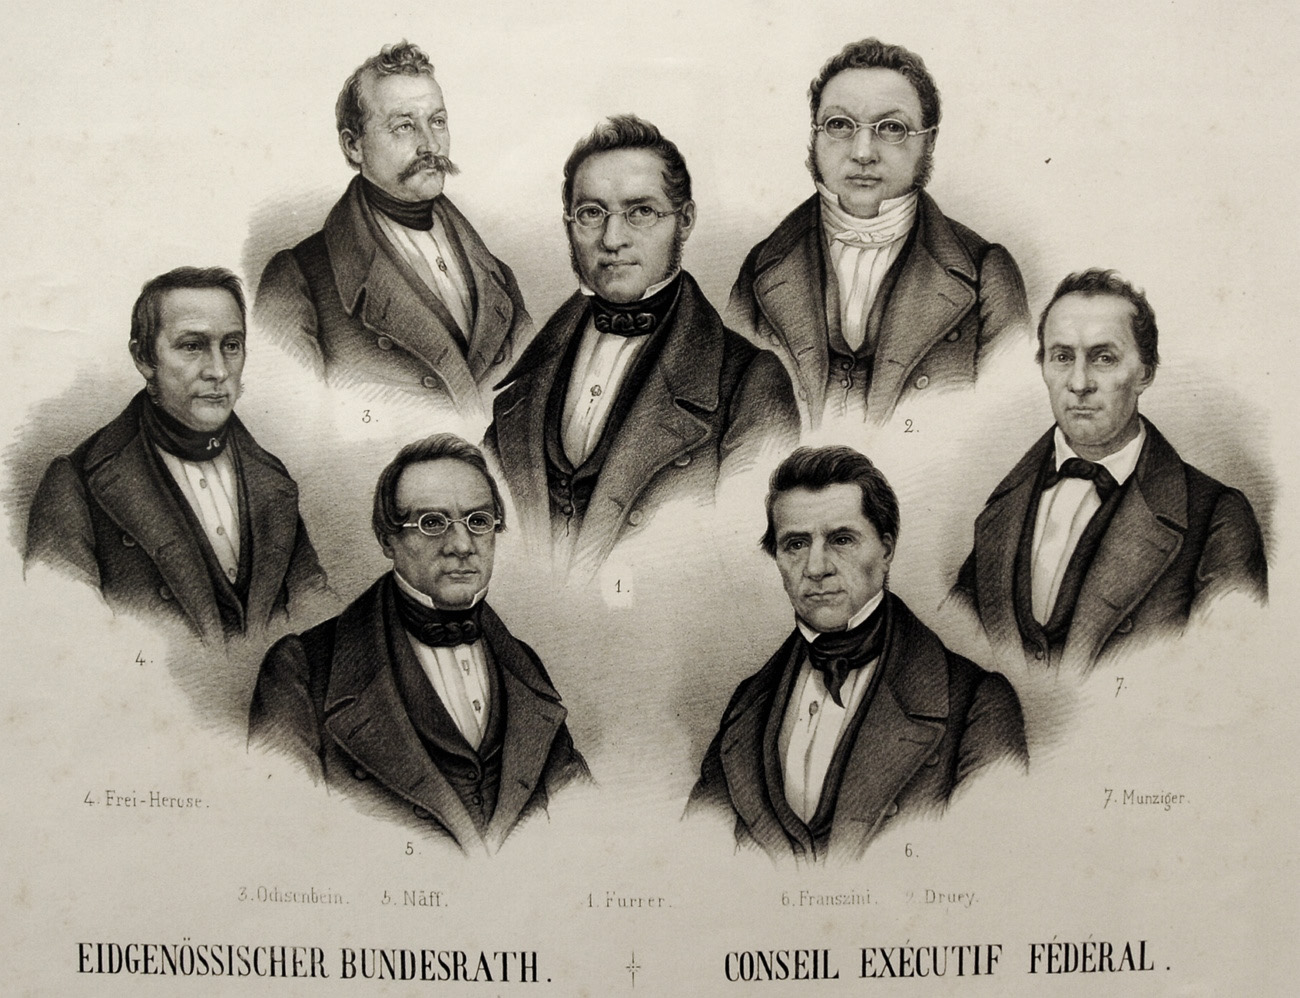 immagine che raffigura i busti di sette uomini membri del consiglio federale nel 1848